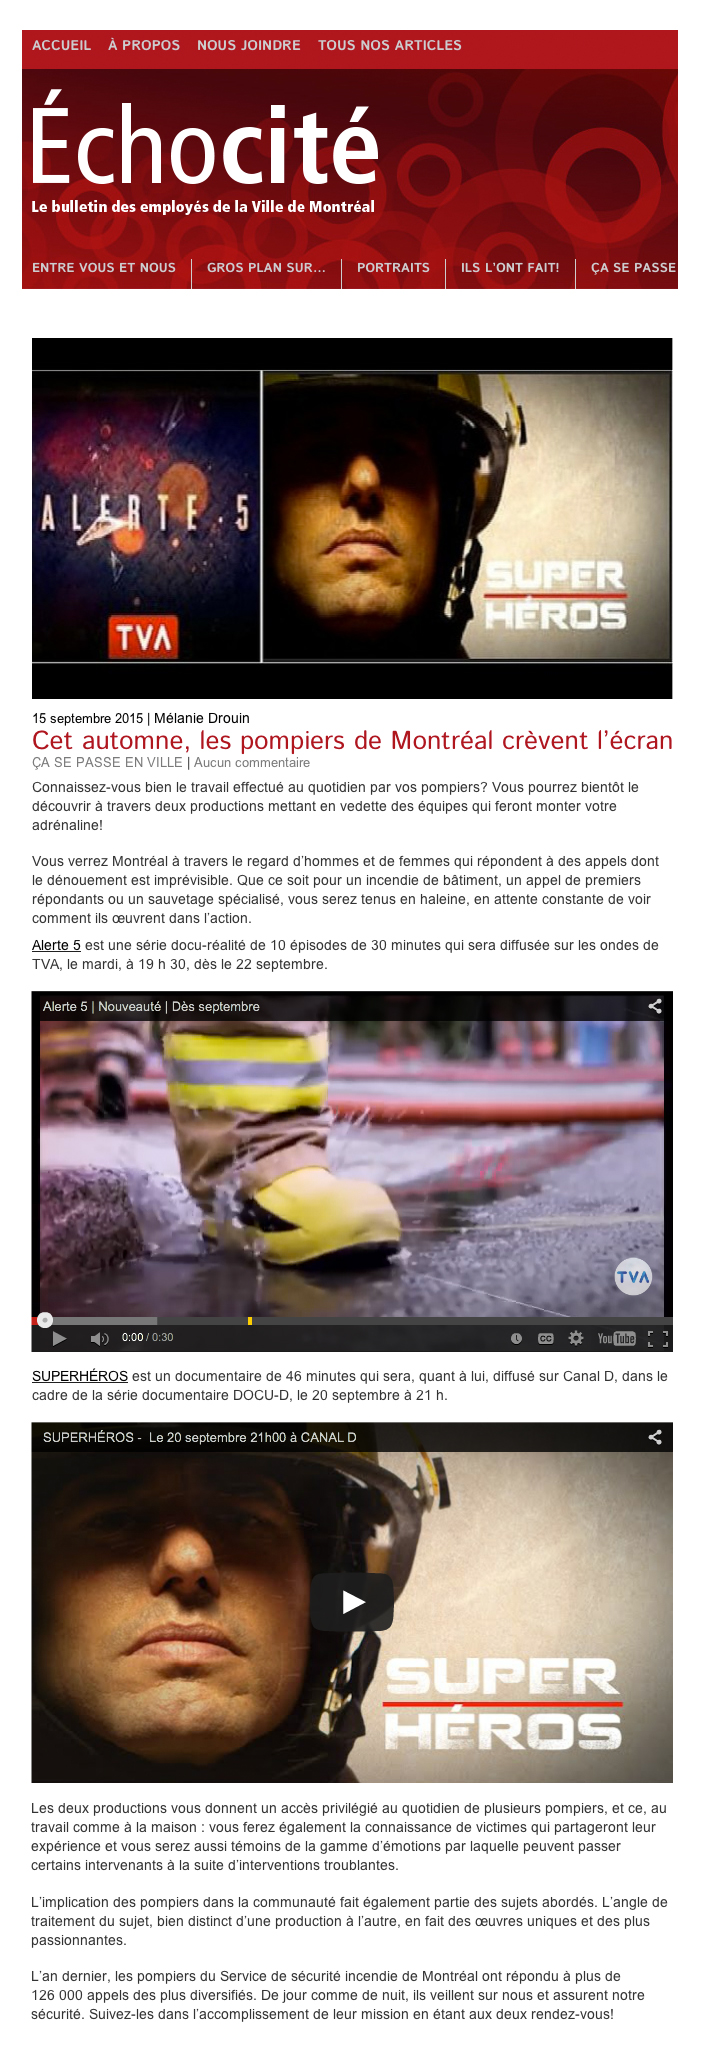 Échocité - Ville Montréal - Superhéros, documentaire sur les pompier (réalisé par Nathalie Ducharme)